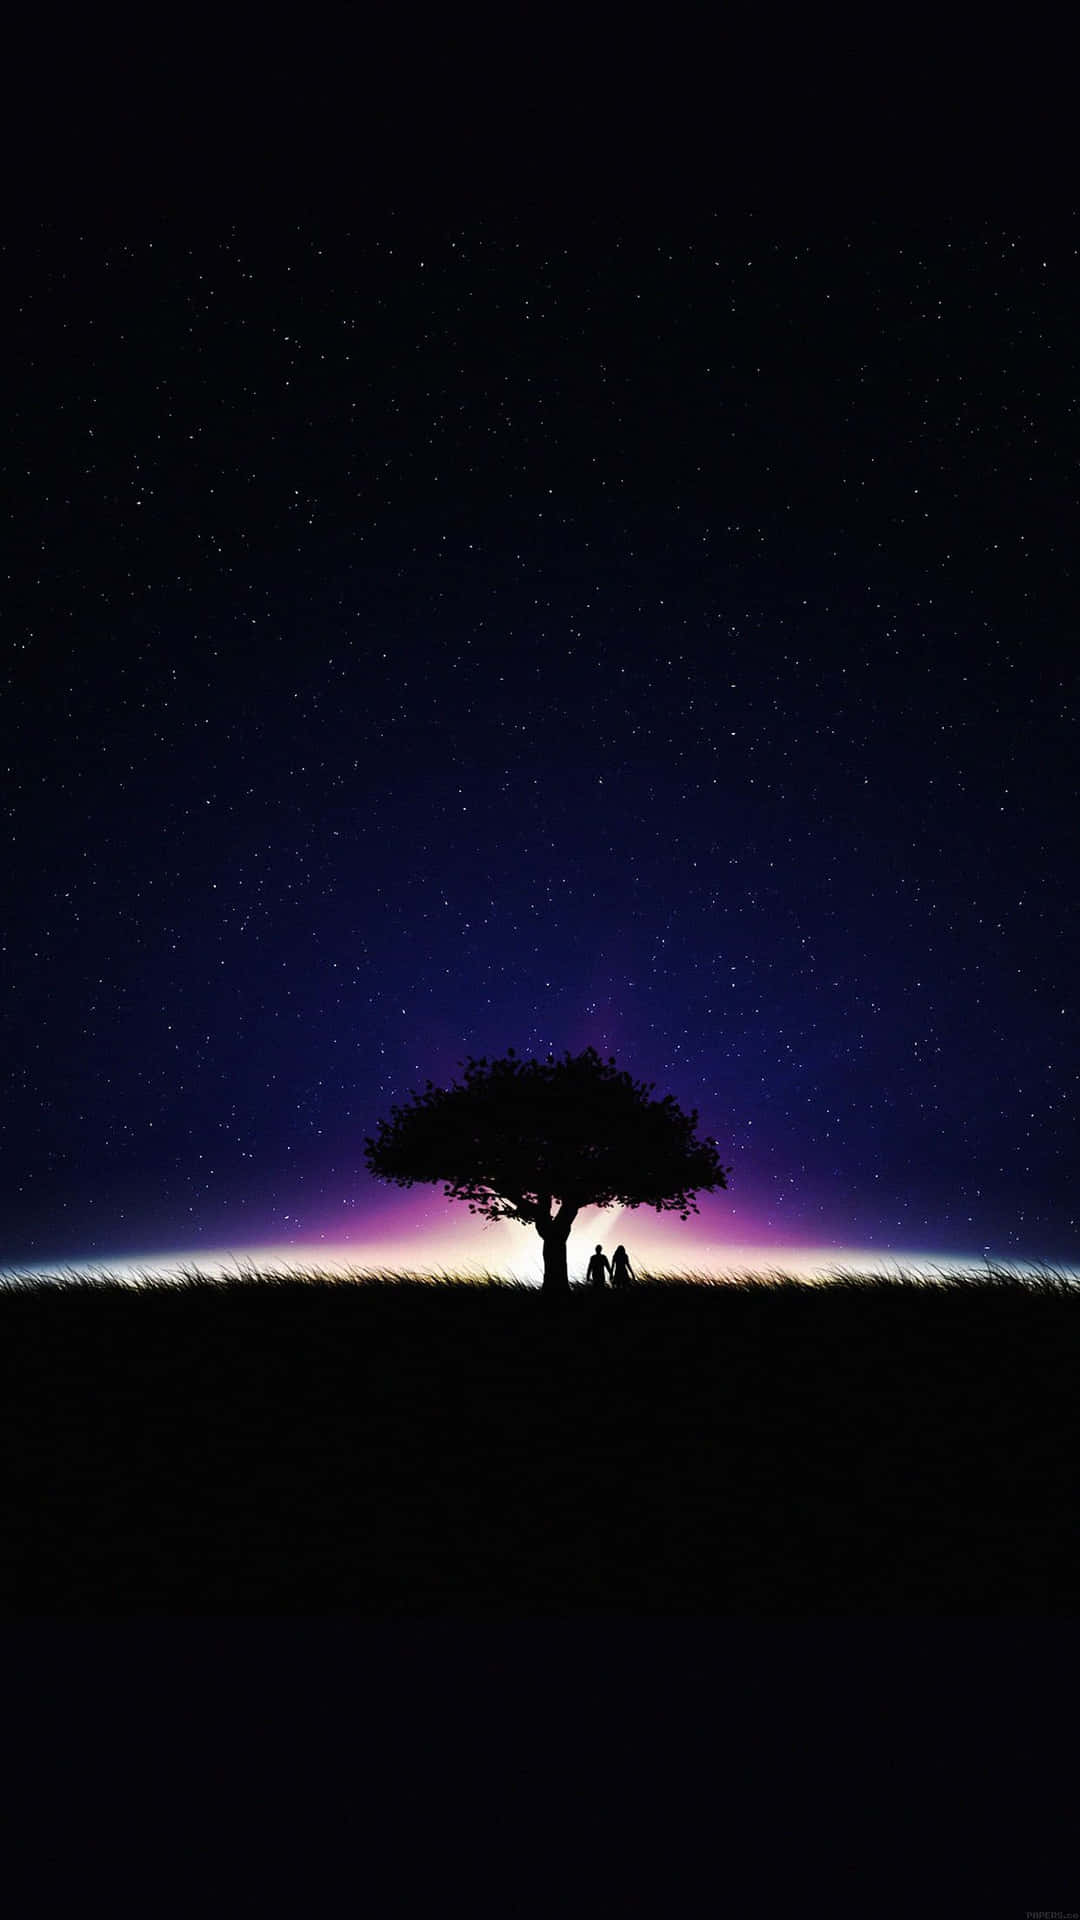 Älskandeunder Ett Träd I Mörk Stjärnklar Natt Wallpaper